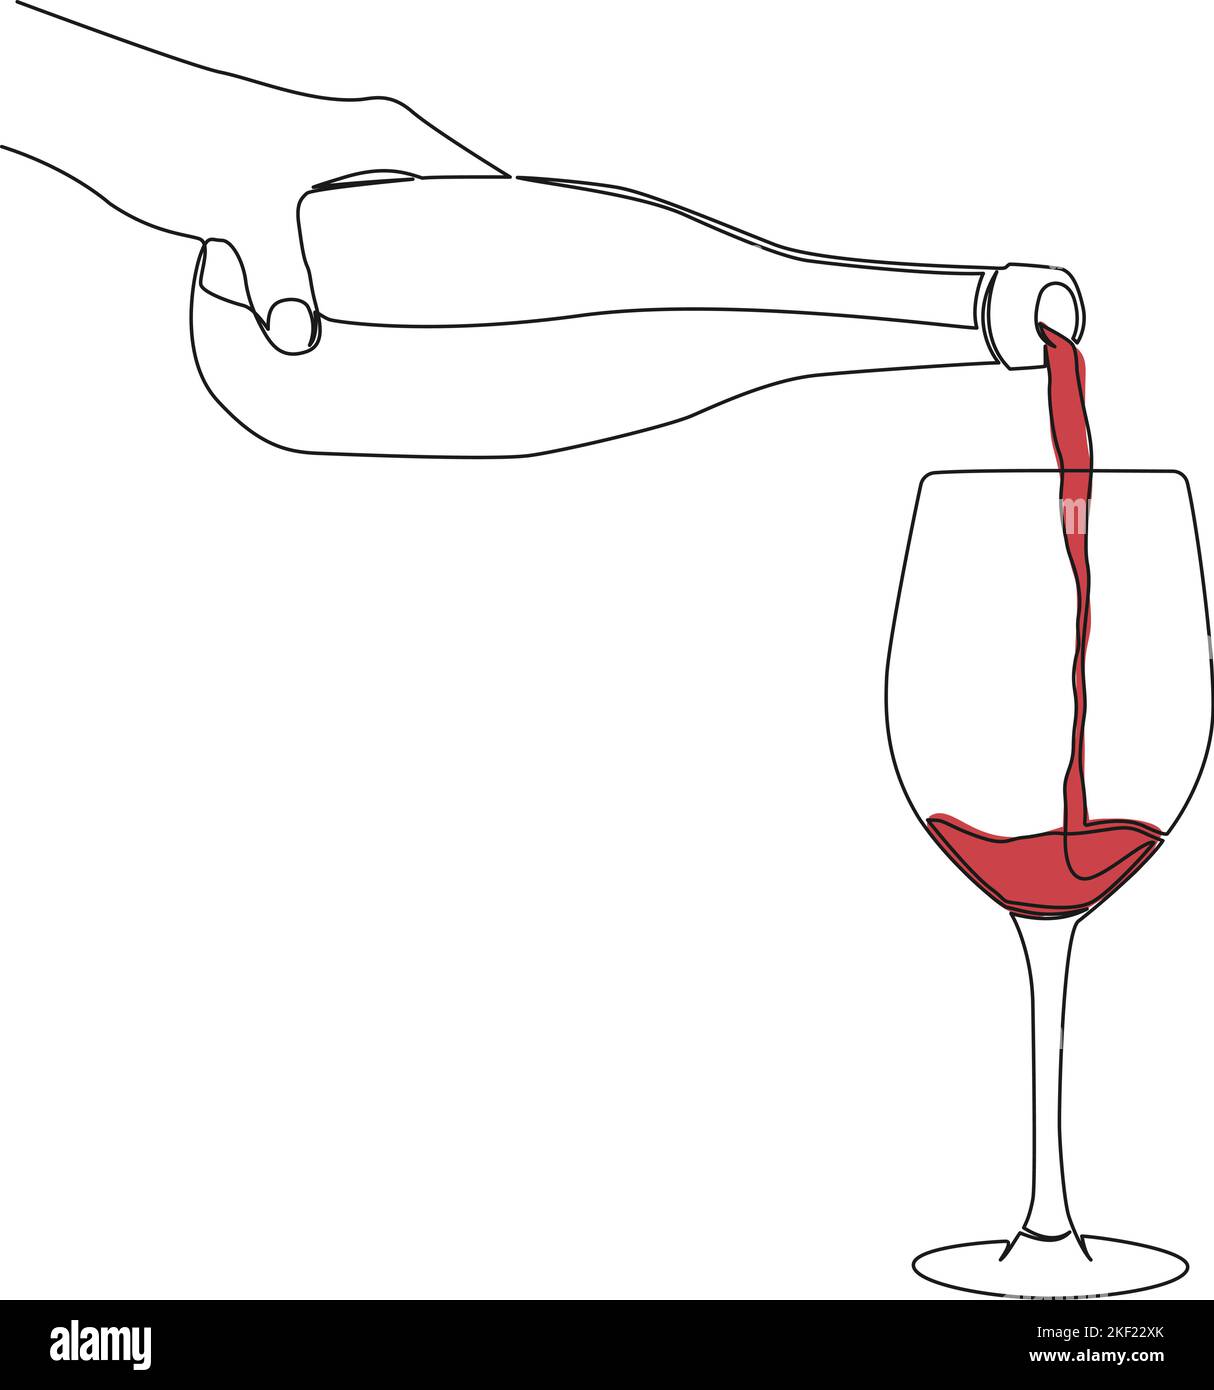 disegno a linea singola continuo della bottiglia di tenuta manuale che versa vino nel vetro, illustrazione vettoriale di line art Illustrazione Vettoriale